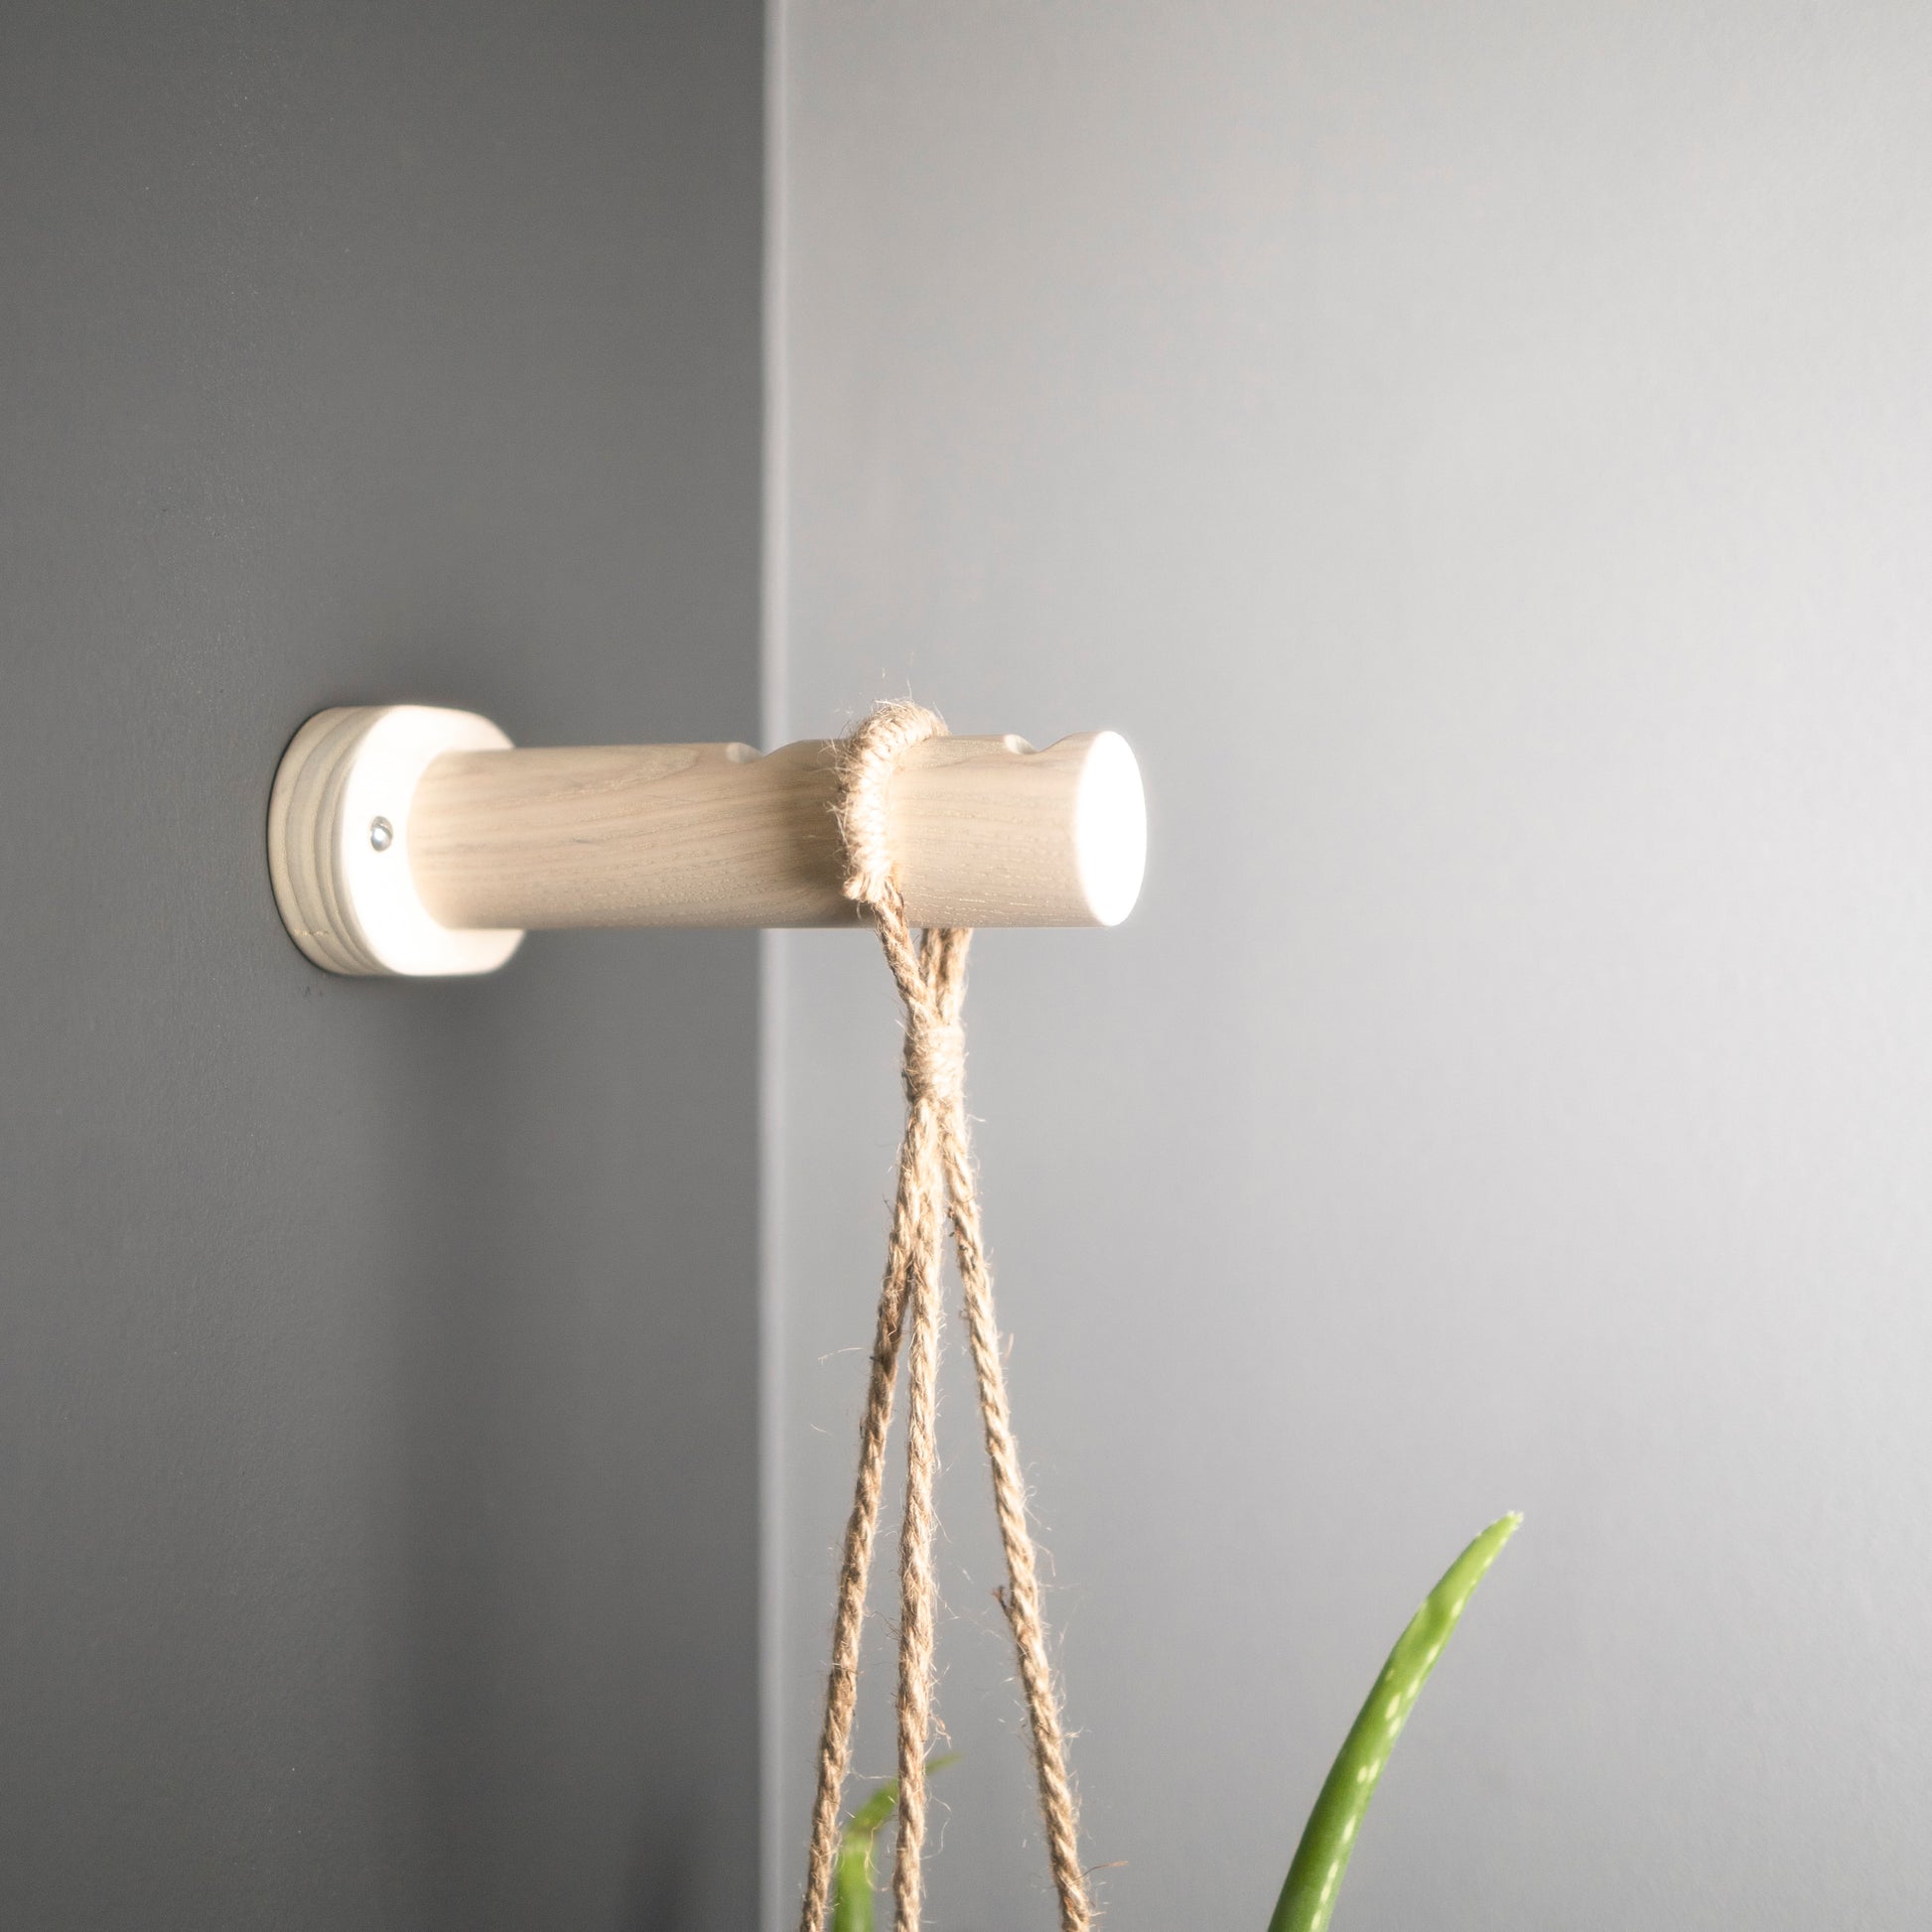 White wall hanging planter bracket